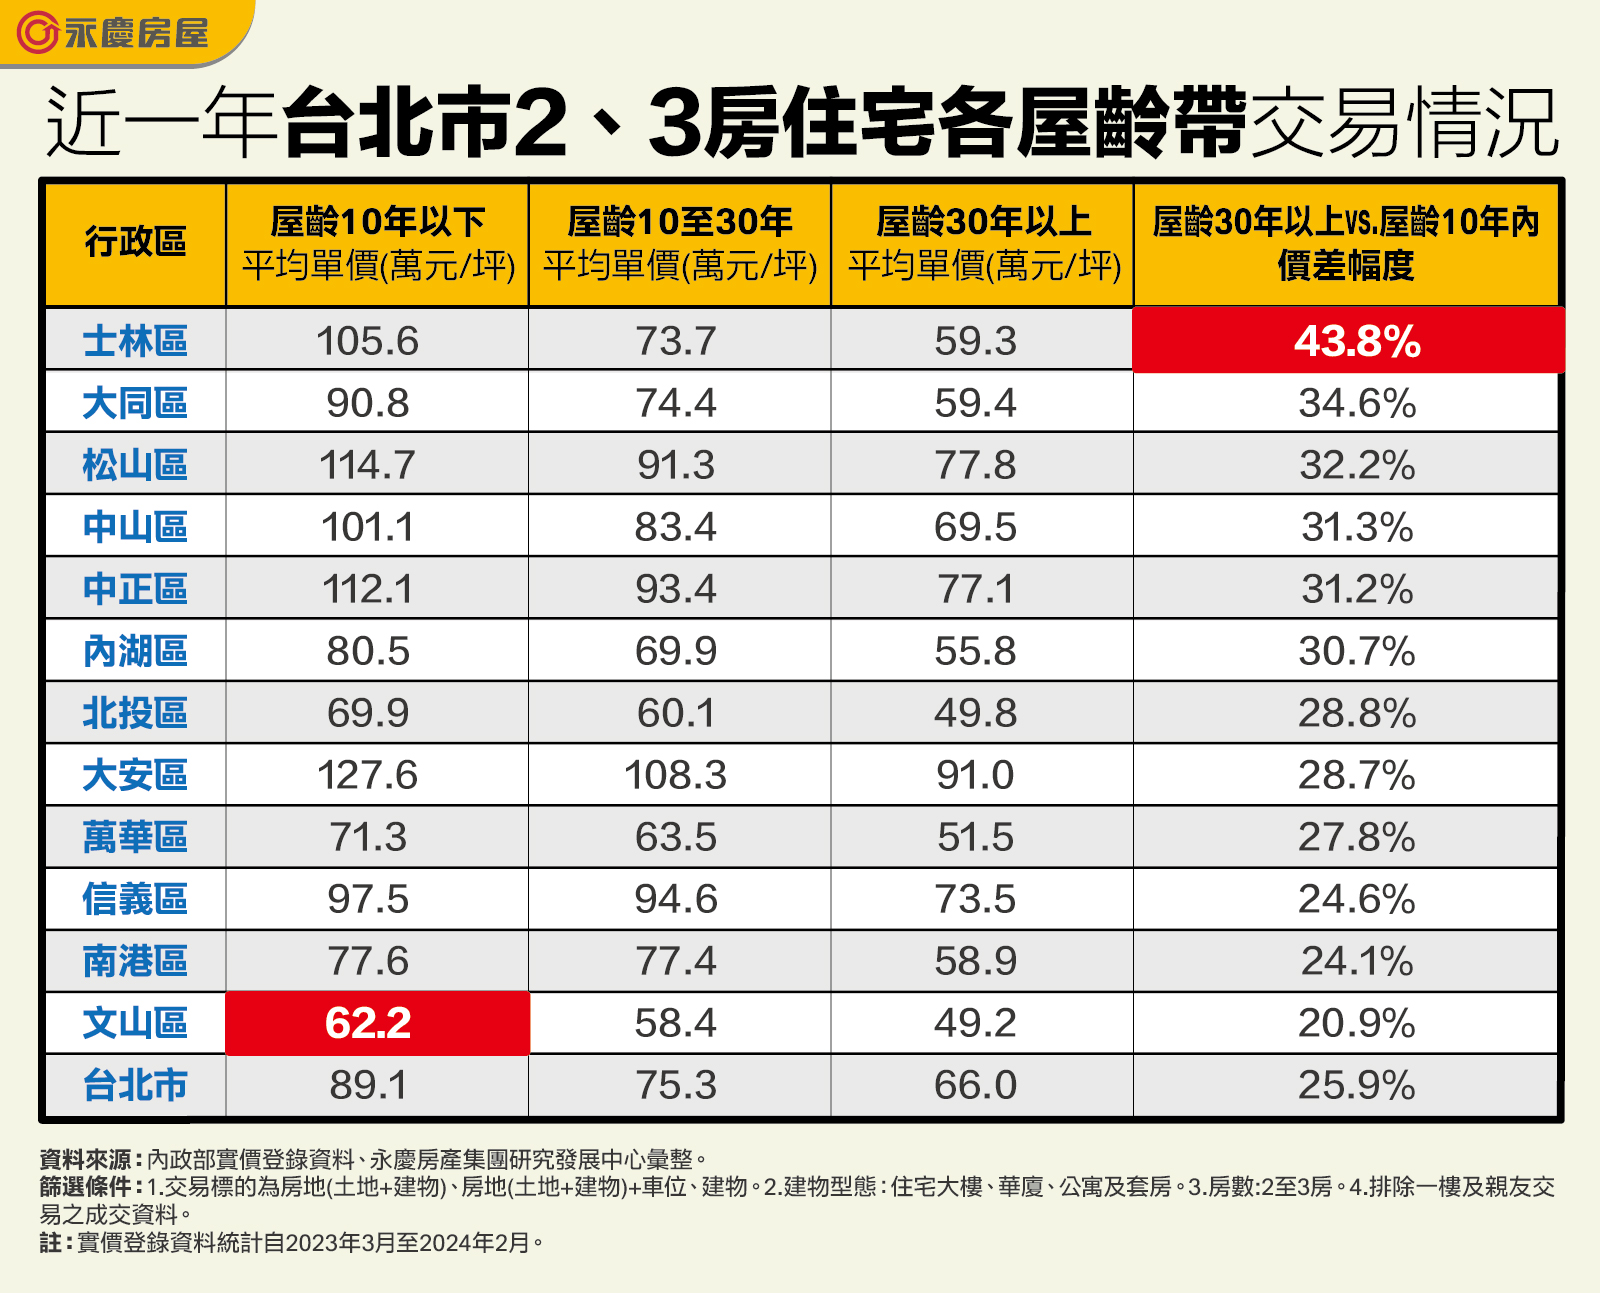 近一年台北市2、3房住宅各屋龄带交易情况。资料来源／永庆房屋